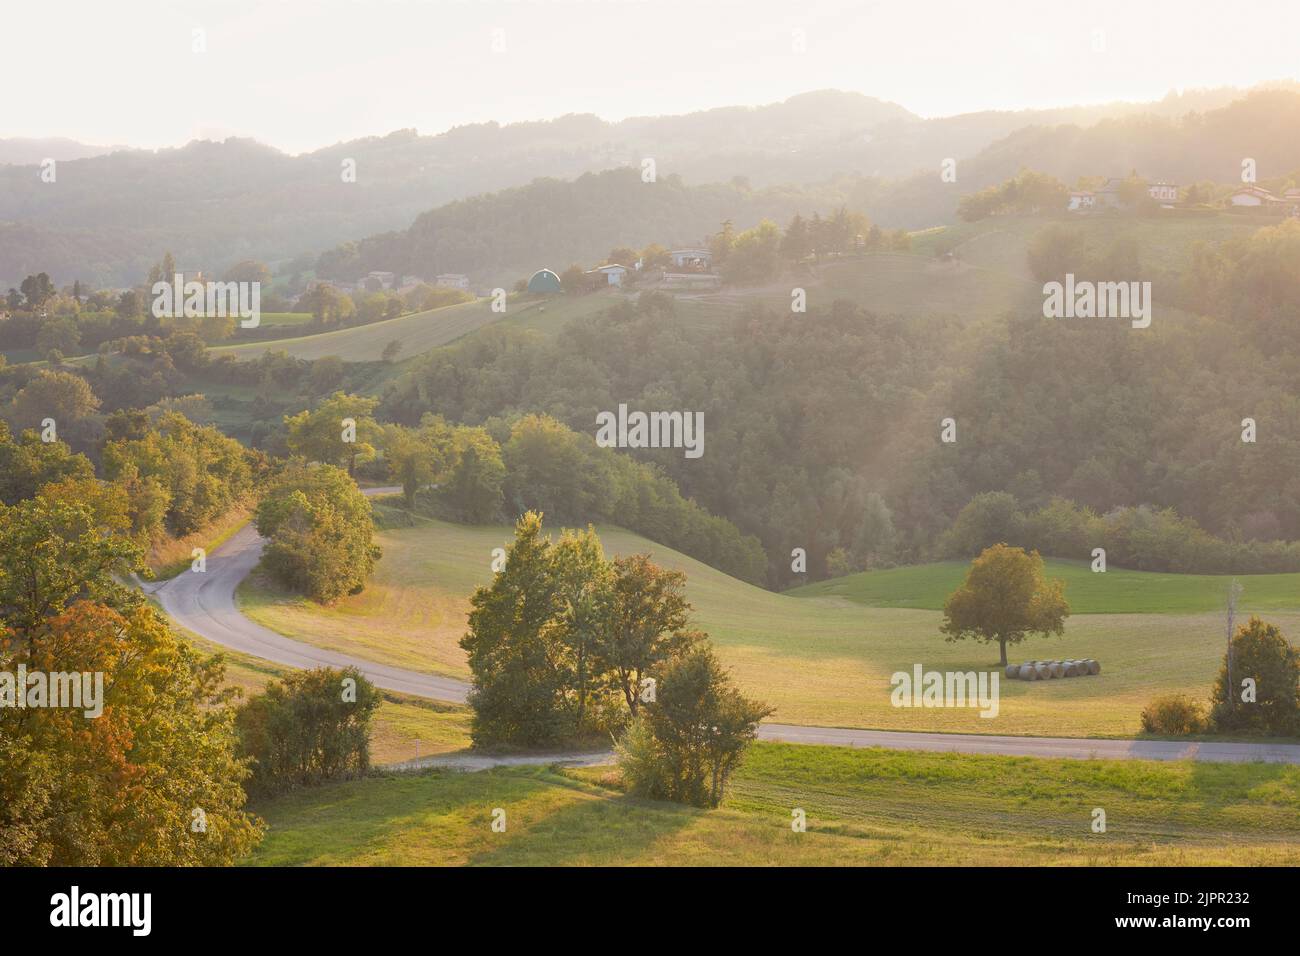 Die Landschaft von Appennino Reggiano über den Hügeln von Reggio Emilia bei Sonnenuntergang, Casina, Emilia Romagna, Italien. Stockfoto